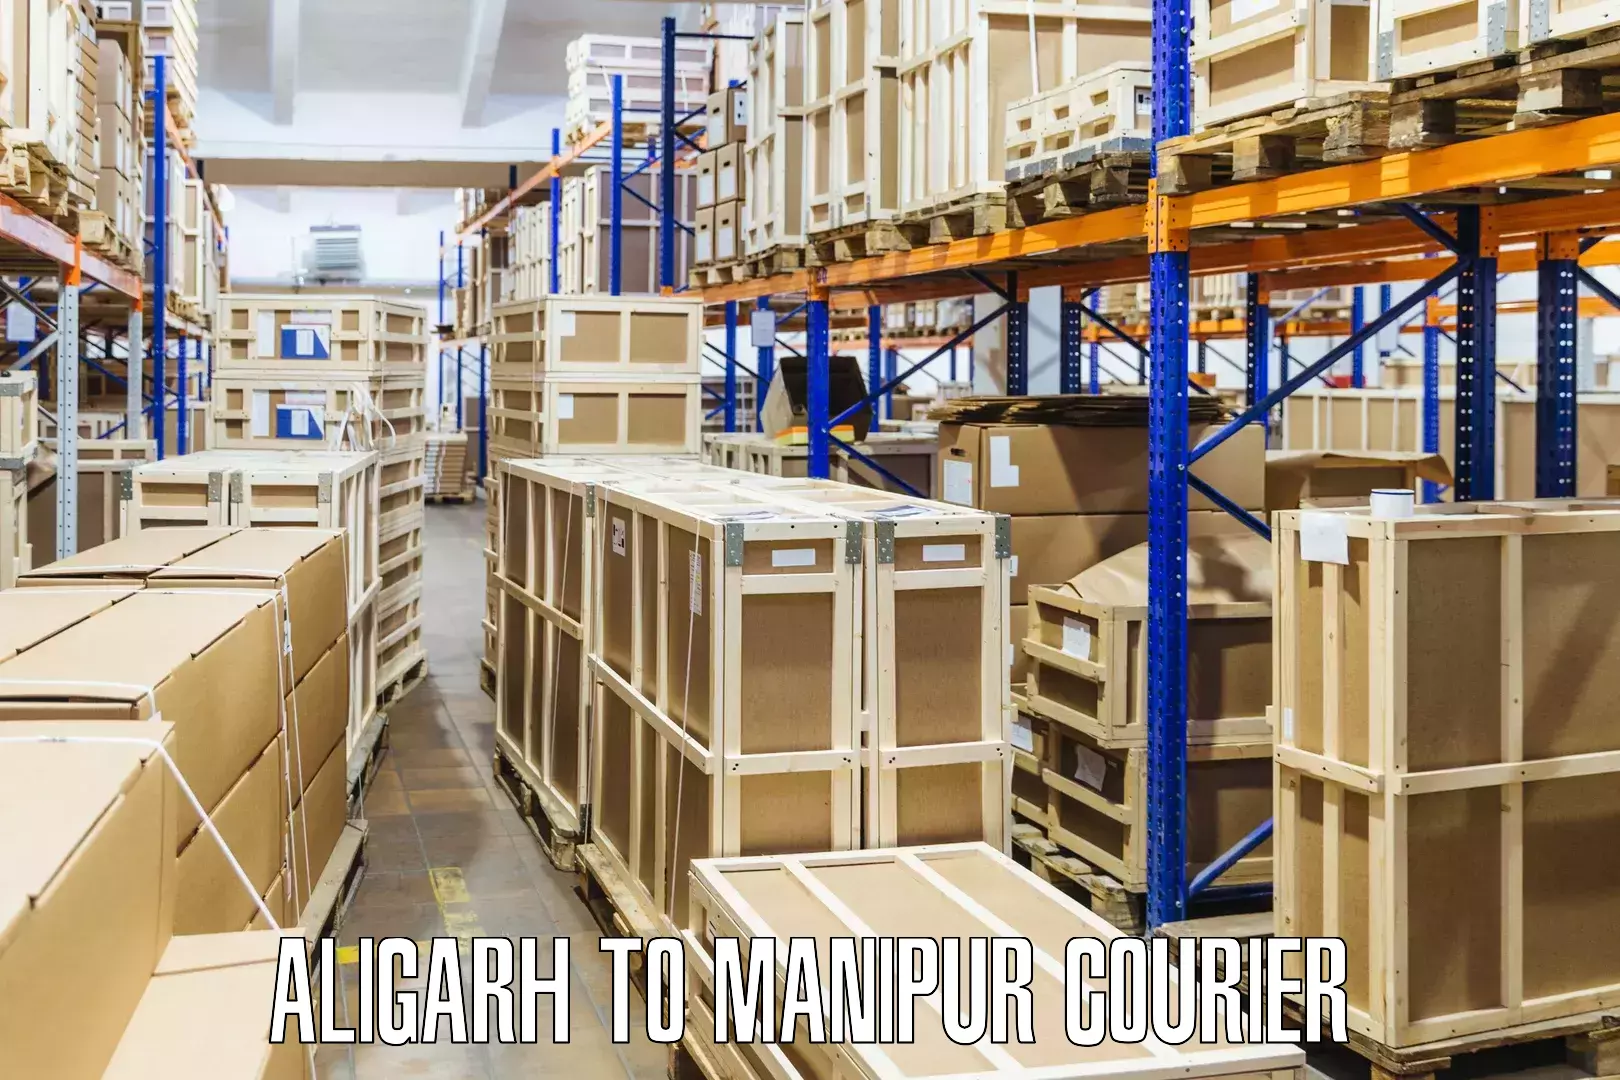 Digital courier platforms Aligarh to Churachandpur